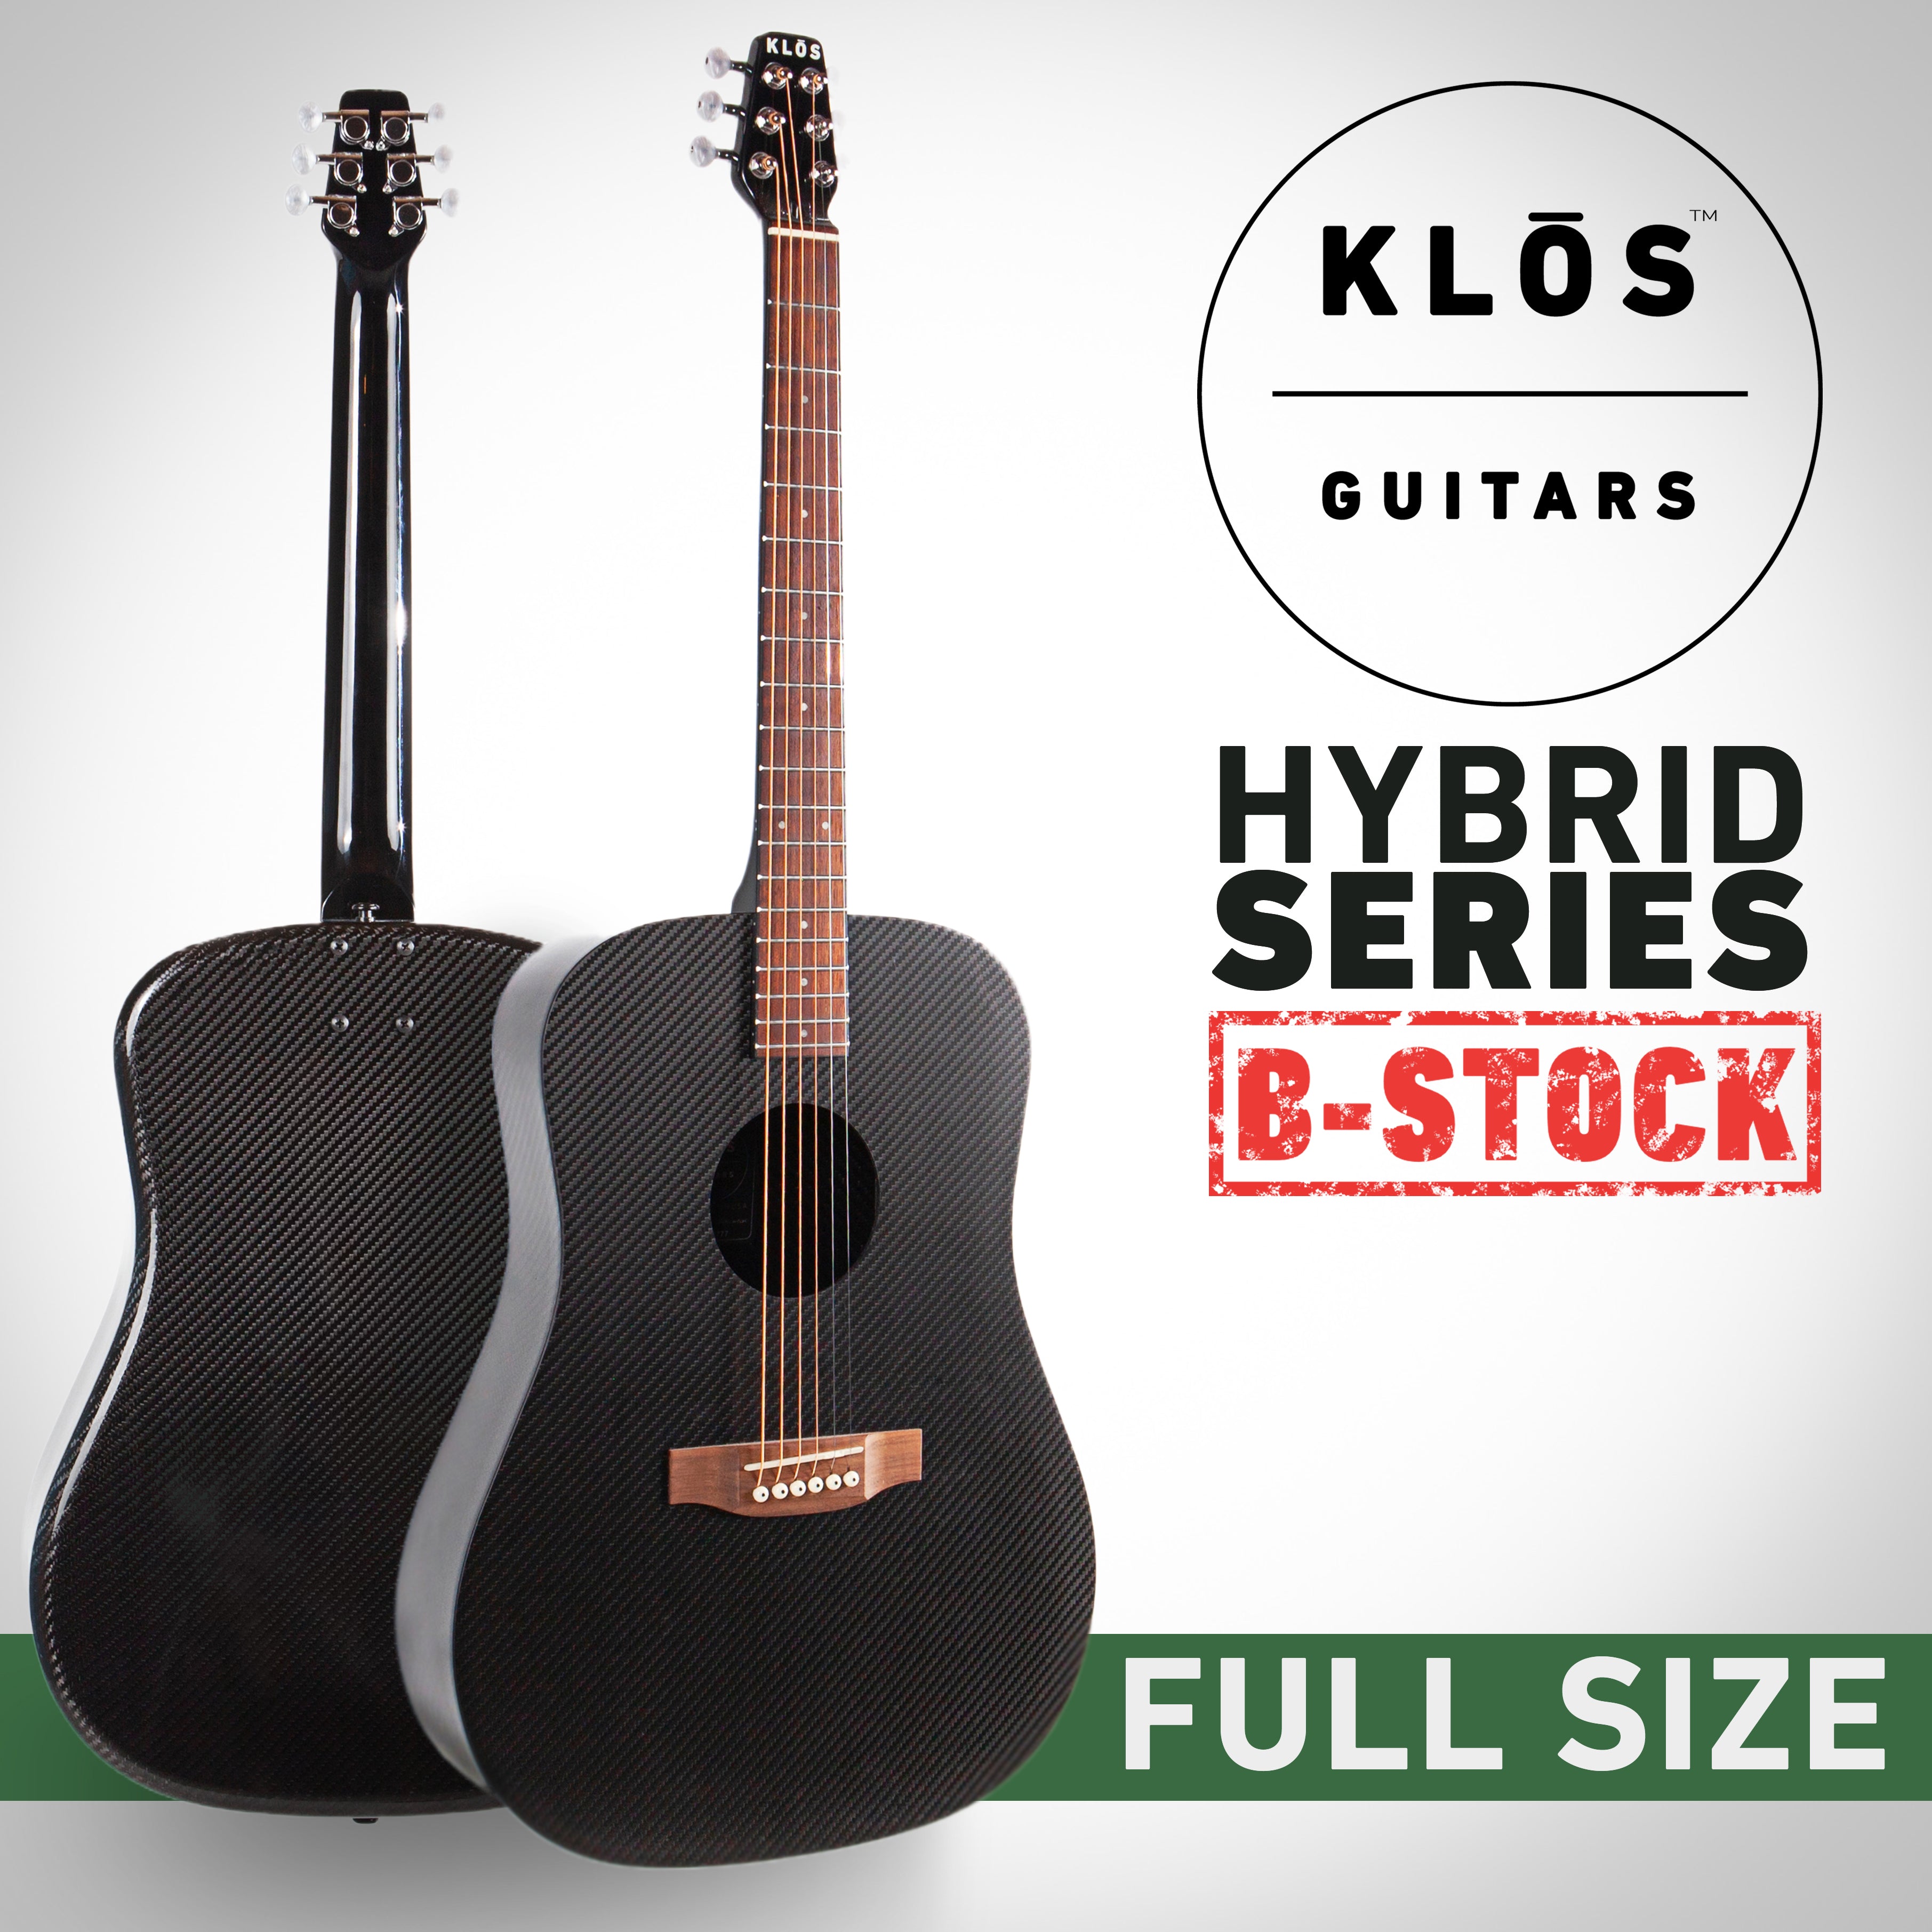 Hybrid Full Size Guitar B-Stock